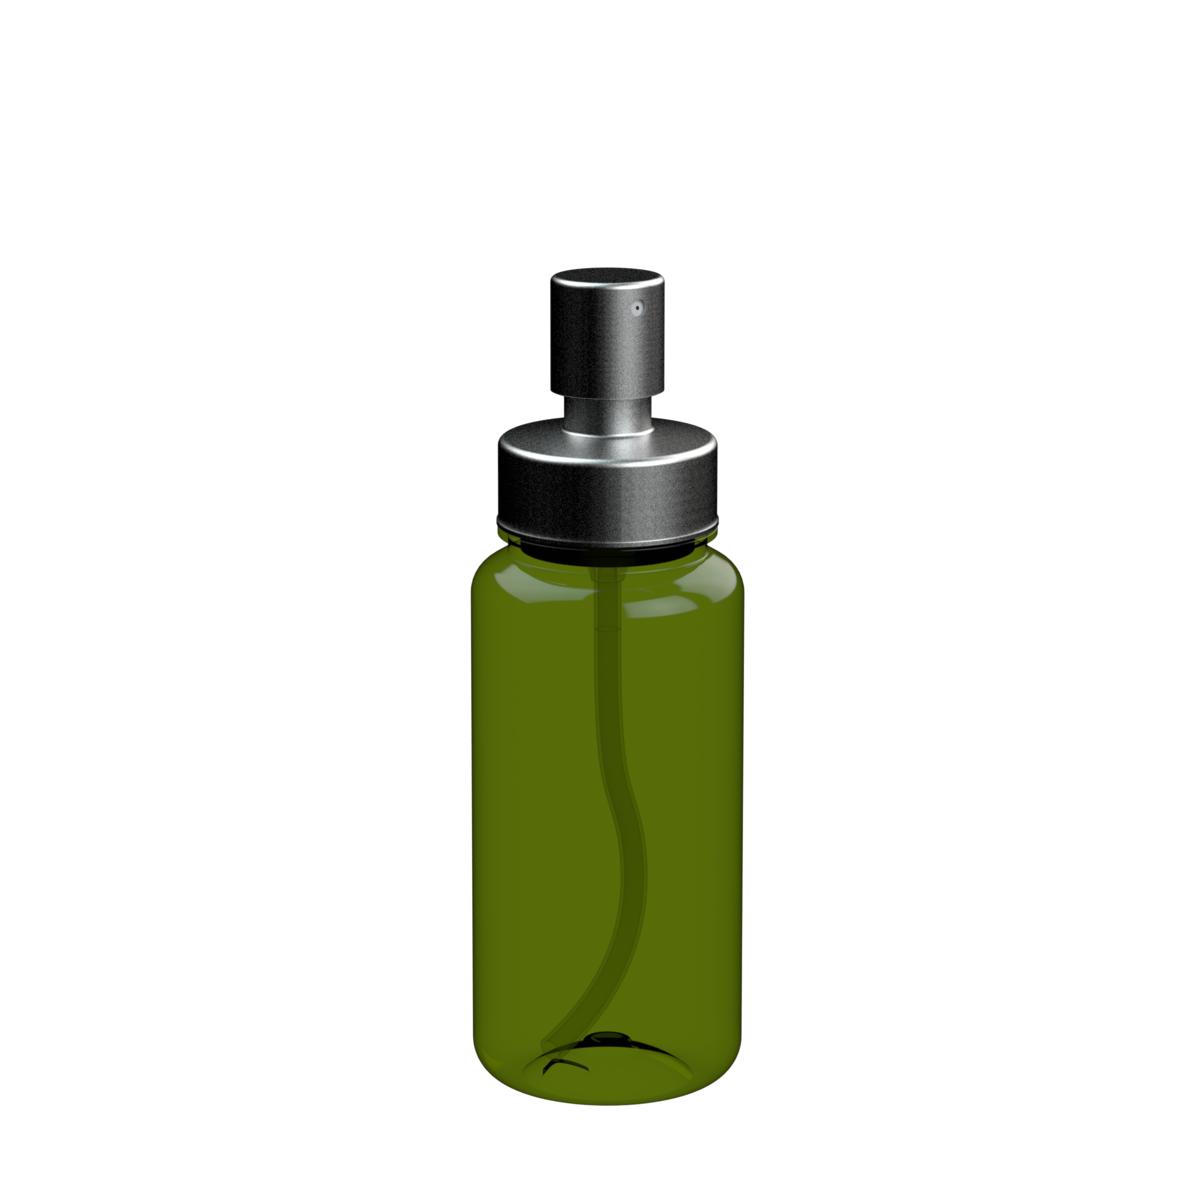 Botella de spray de alta calidad - Thorpe Mandeville - Blecua y Torres